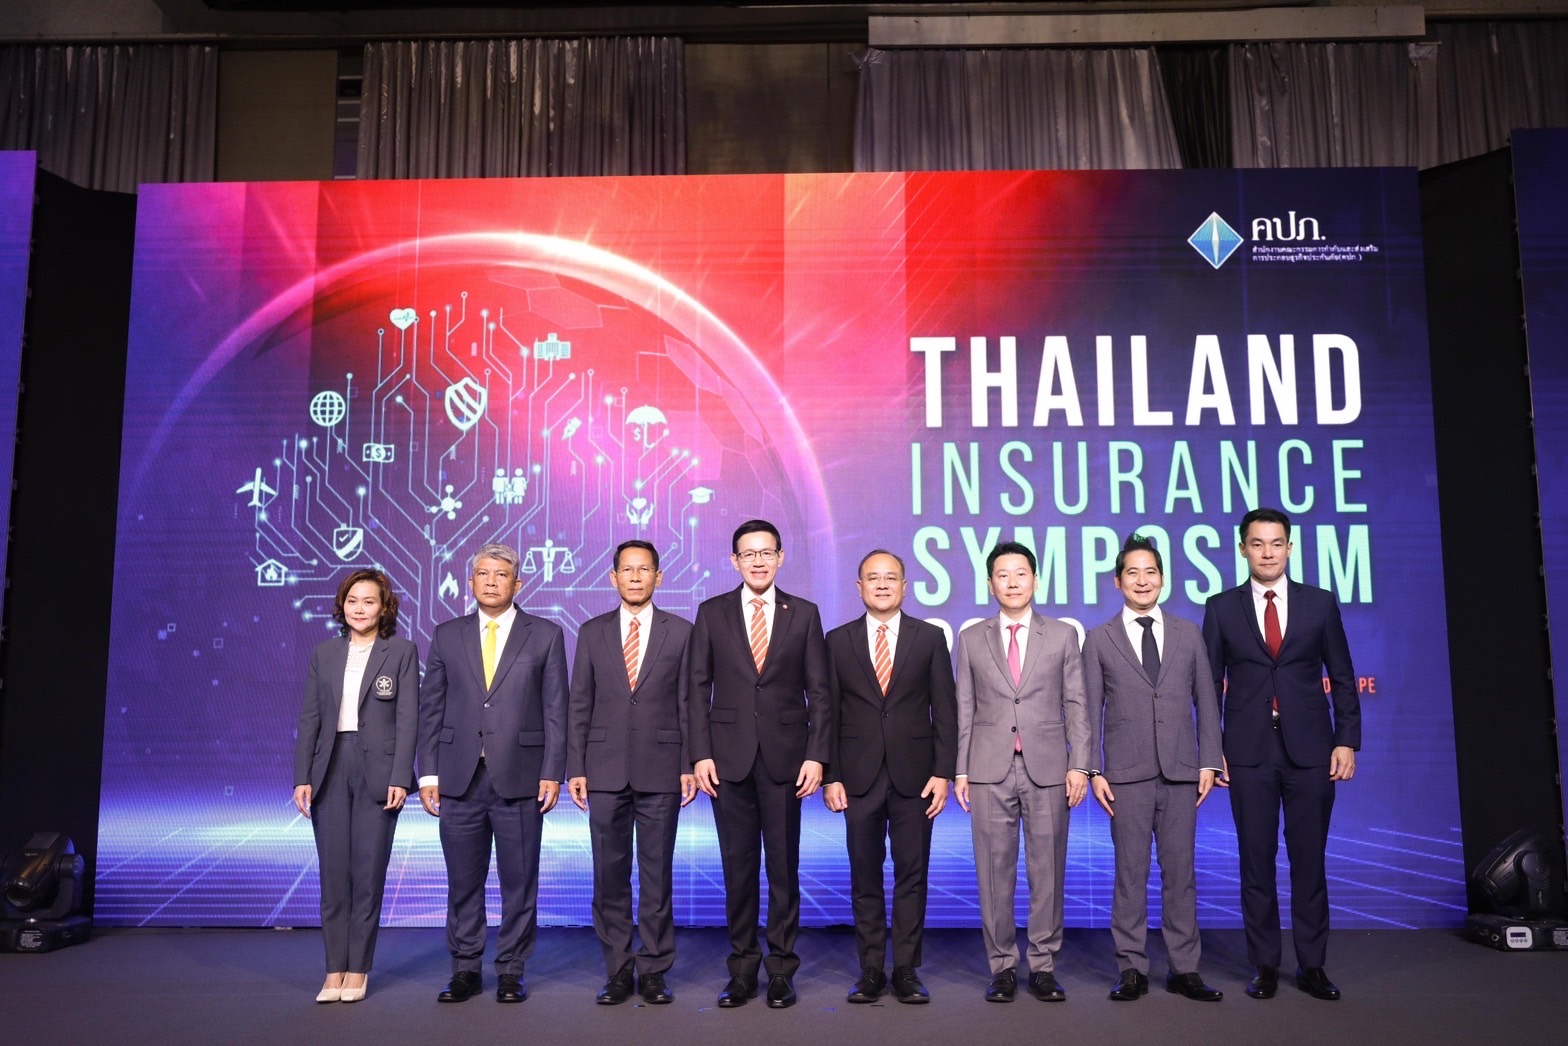 สัมมนาวิชาการด้านประกันภัย ประจำปี 2566 ของสำนักงาน คปภ. “Thailand Insurance Symposium 2023” เปิดเวทีนำเสนอสุดยอดผลงานทางวิชาการดีเด่น ชูประกันภัยคาร์บอนเครดิตช่วยบริหารความเสี่ยงสภาวะโลกร้อน พร้อมเปิดตัวผลงานวิจัย “แอปตรวจจับการฉ้อฉลขายประกันภัย” เพื่อคุ้มครองผู้บริโภค